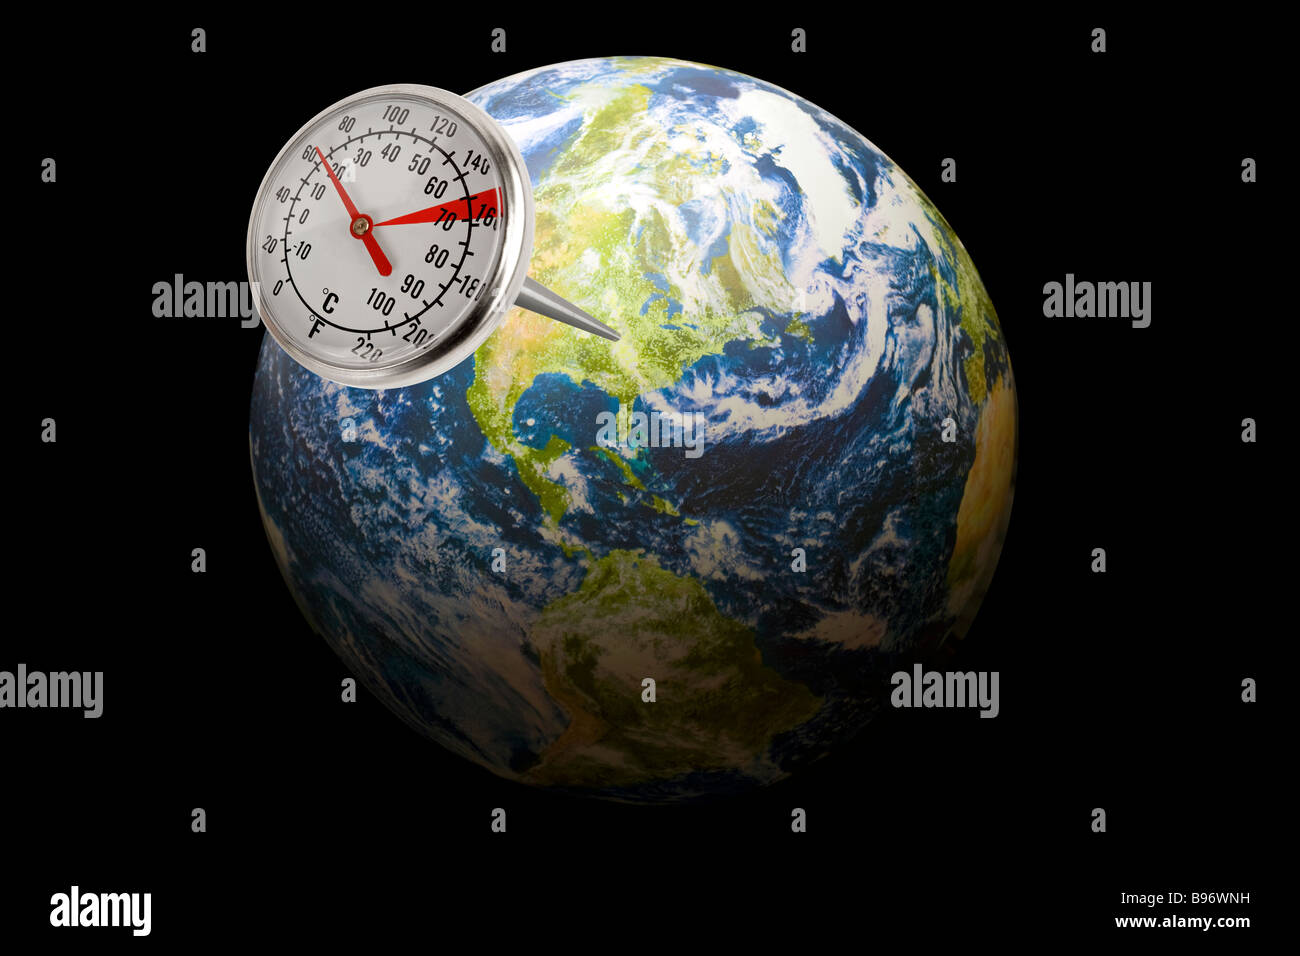 Thermomètre sortant de la planète terre illustrant les émissions de carbone ou un changement de température de la planète Banque D'Images